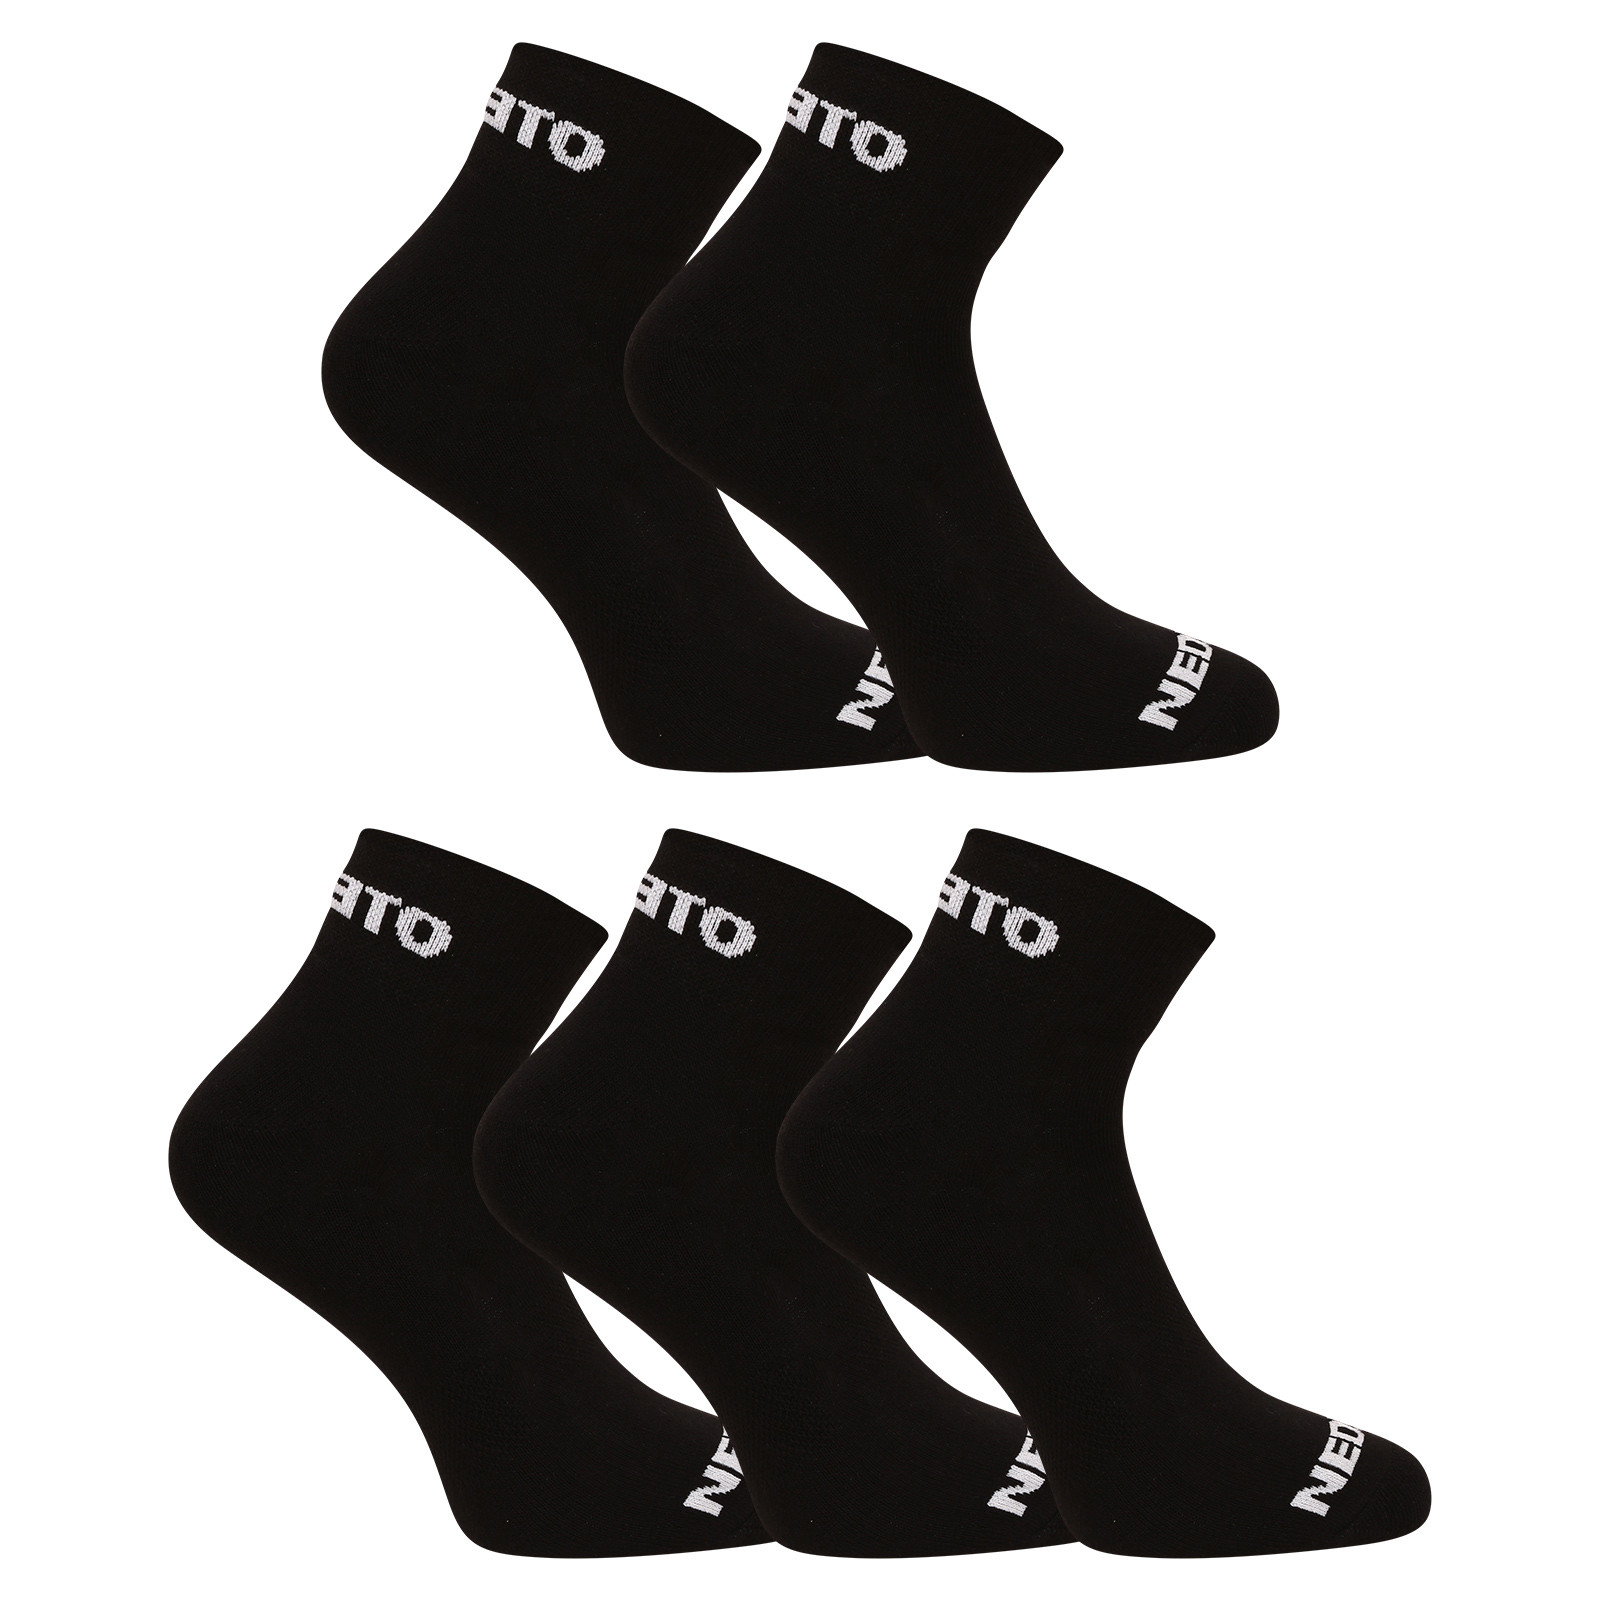 E-shop 5PACK ponožky Nedeto kotníkové černé